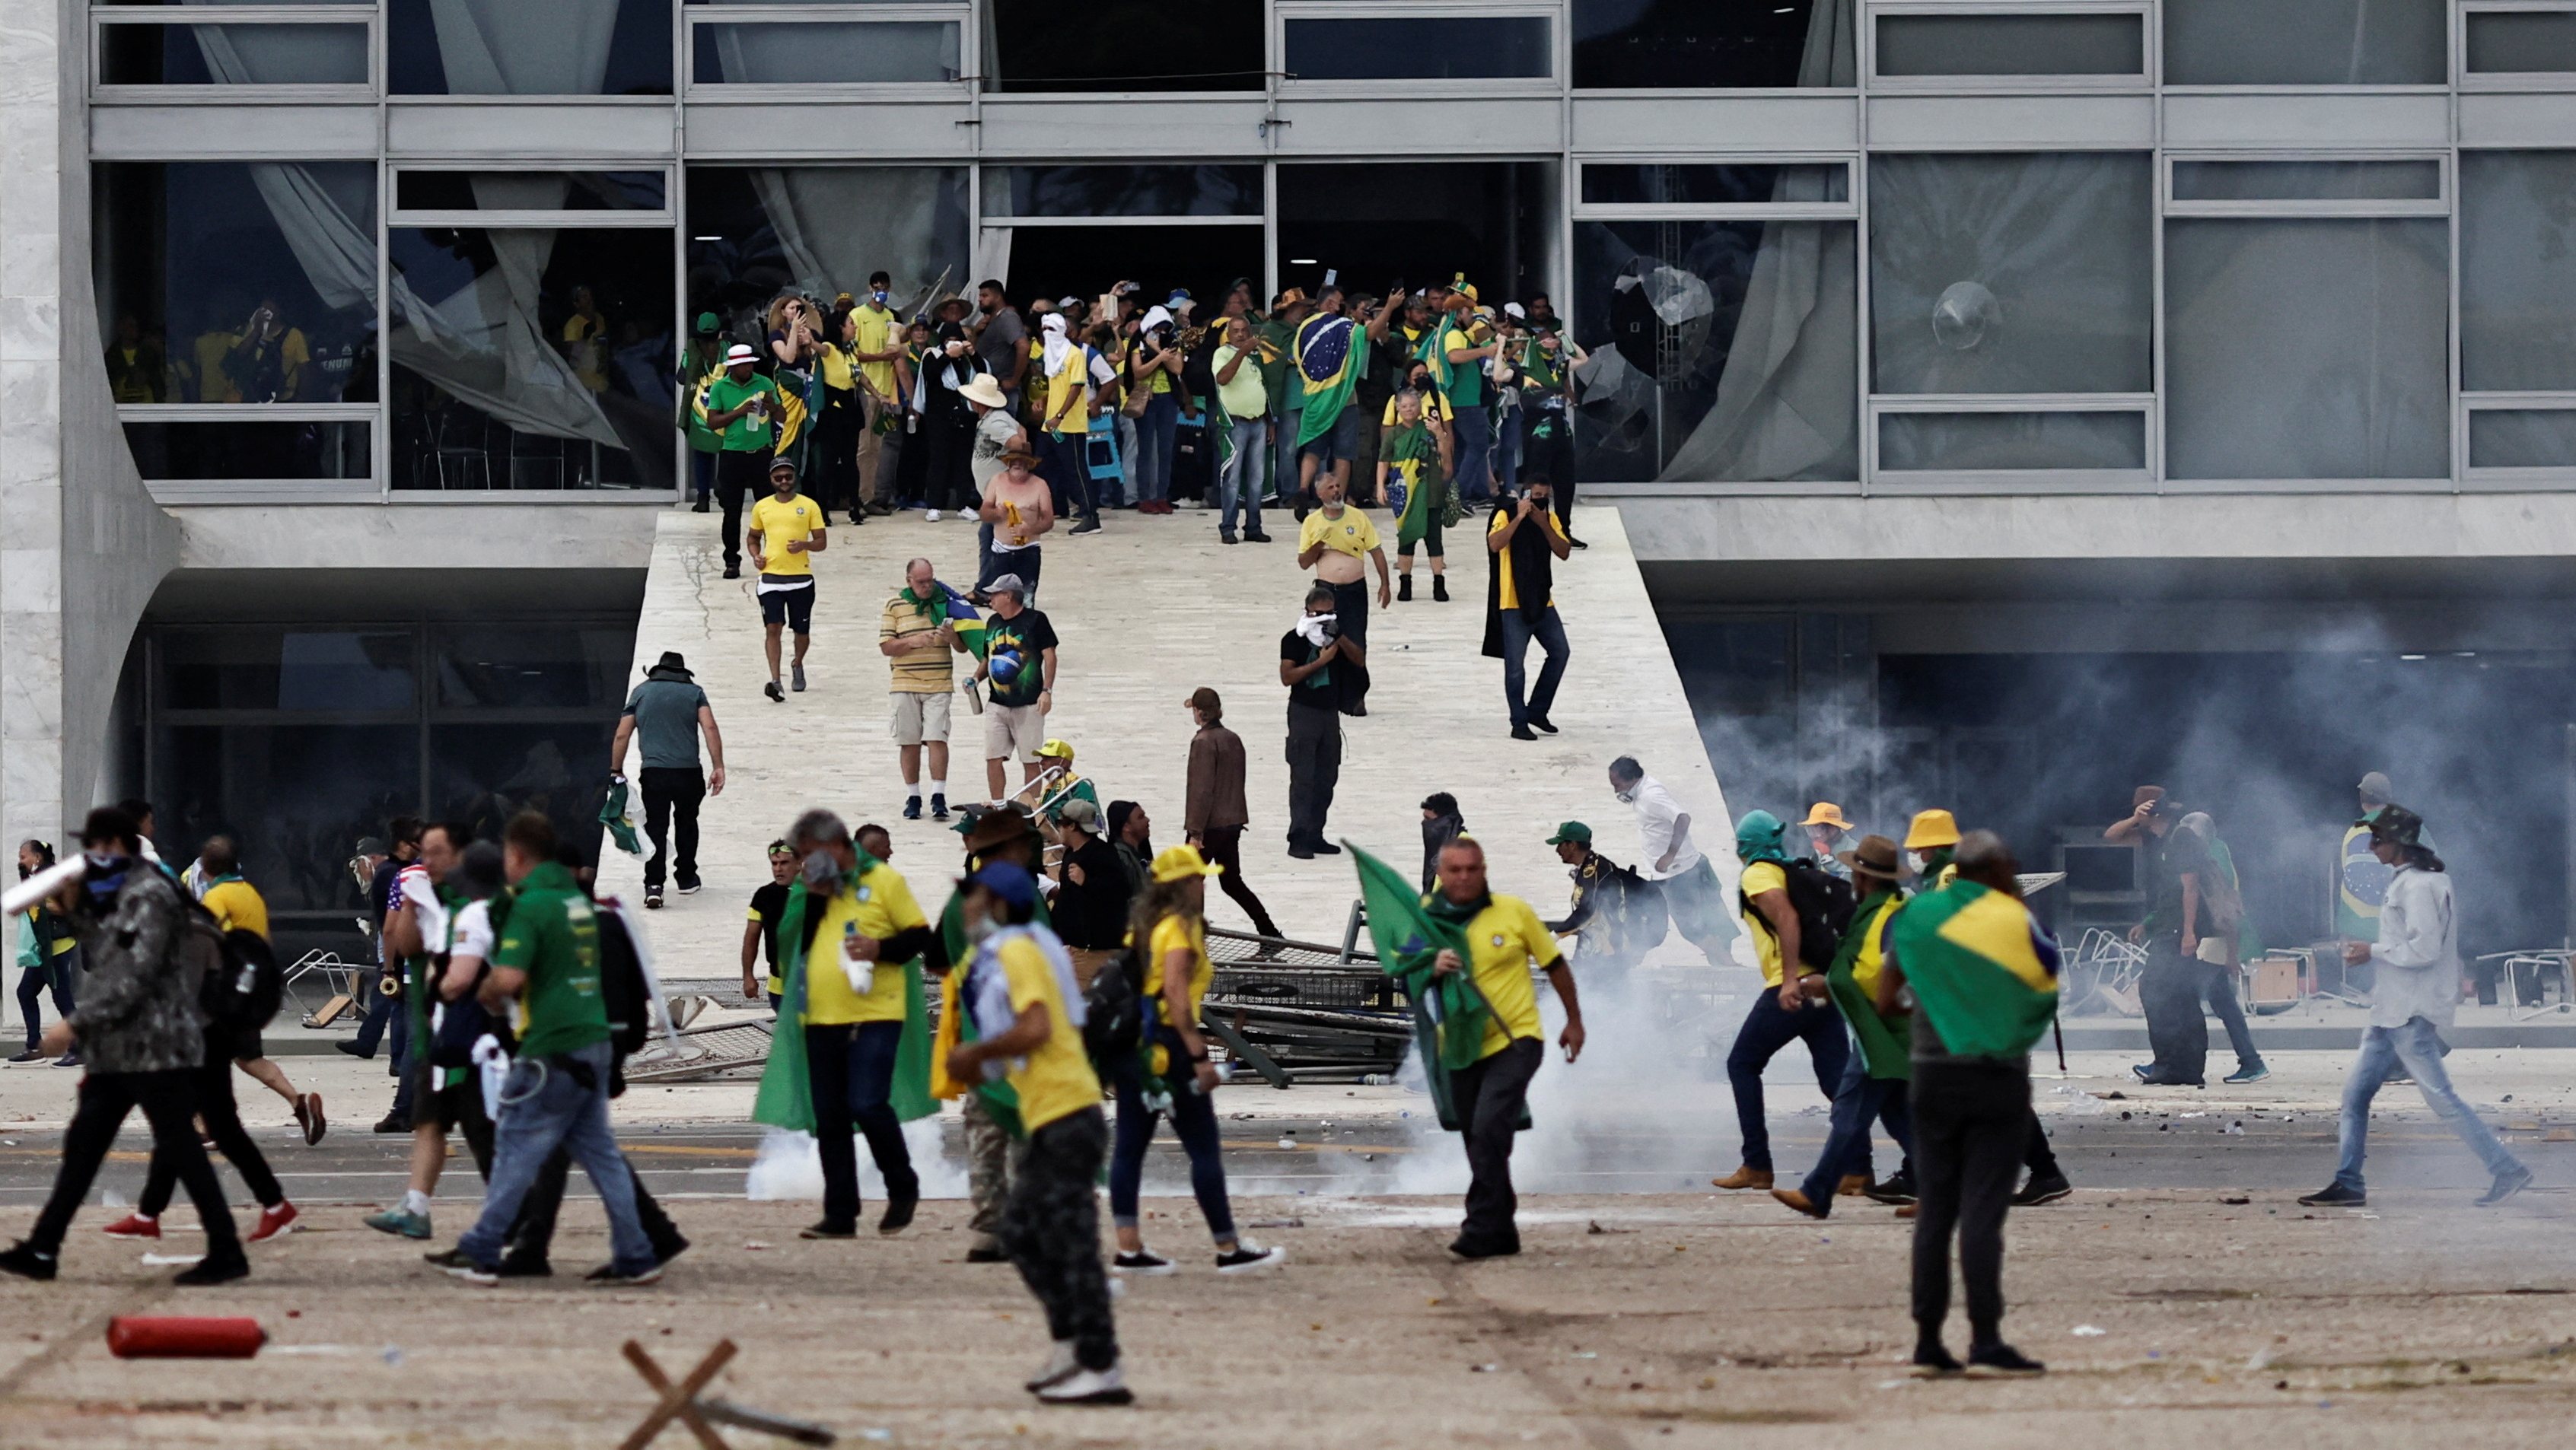 No domingo, milhares de apoiantes do Jair Bolsonaro invadiram e vandalizaram o Palácio do Planalto, o Supremo Tribunal Federal e a sede do Congresso Nacional, em Brasília